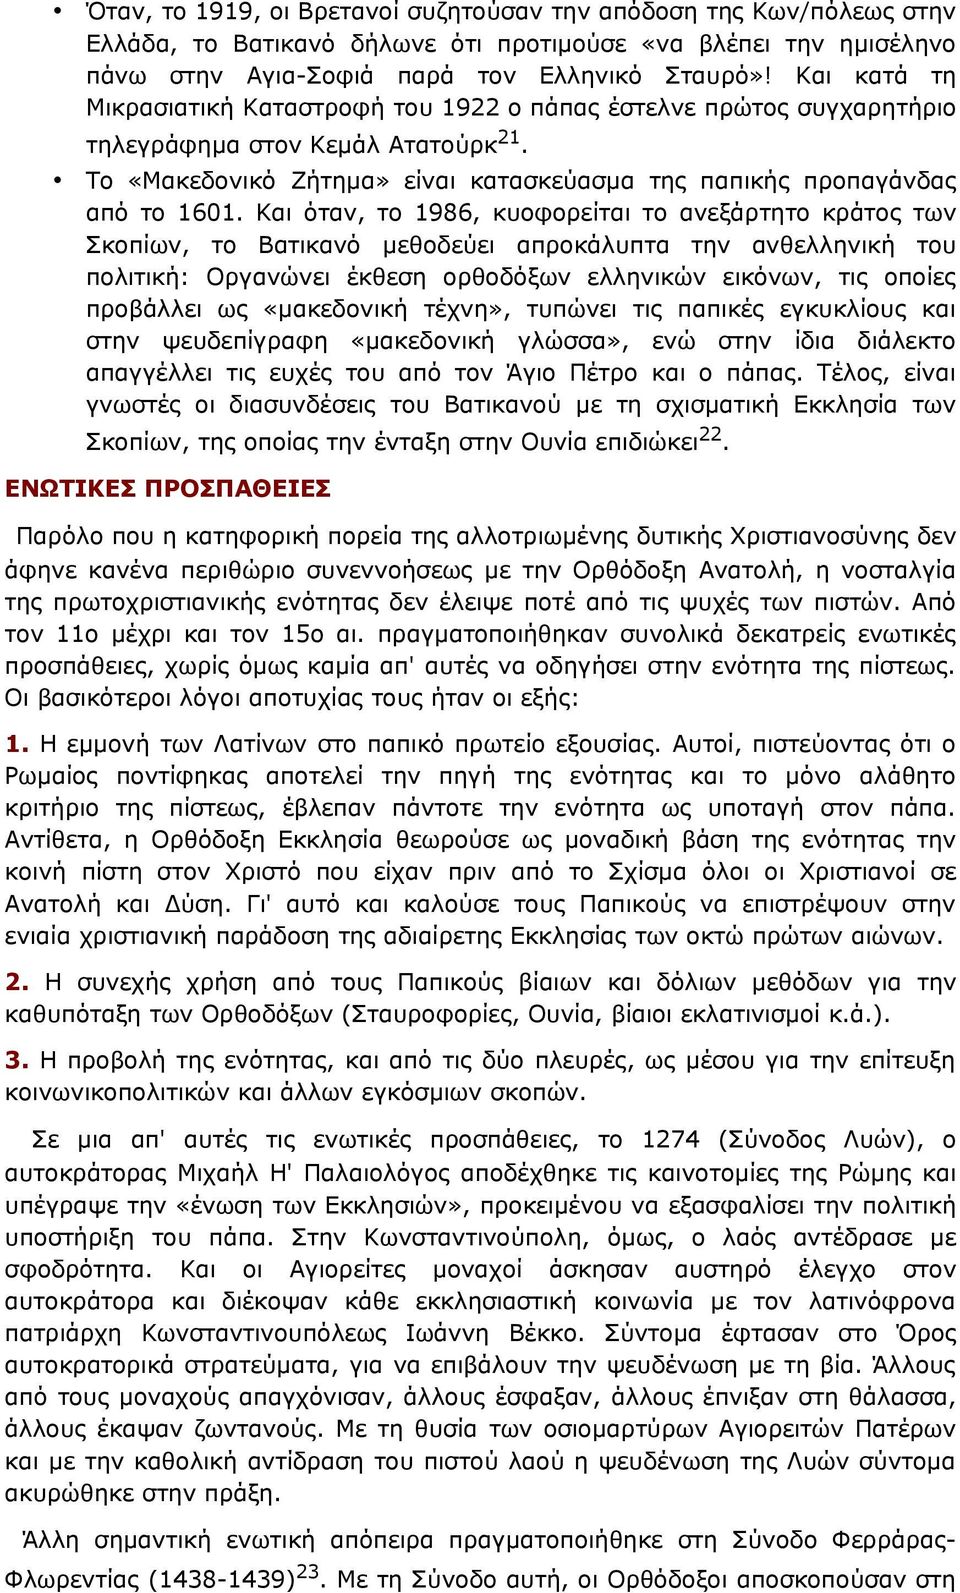 Και όταν, το 1986, κυοφορείται το ανεξάρτητο κράτος των Σκοπίων, το Βατικανό μεθοδεύει απροκάλυπτα την ανθελληνική του πολιτική: Οργανώνει έκθεση ορθοδόξων ελληνικών εικόνων, τις οποίες προβάλλει ως